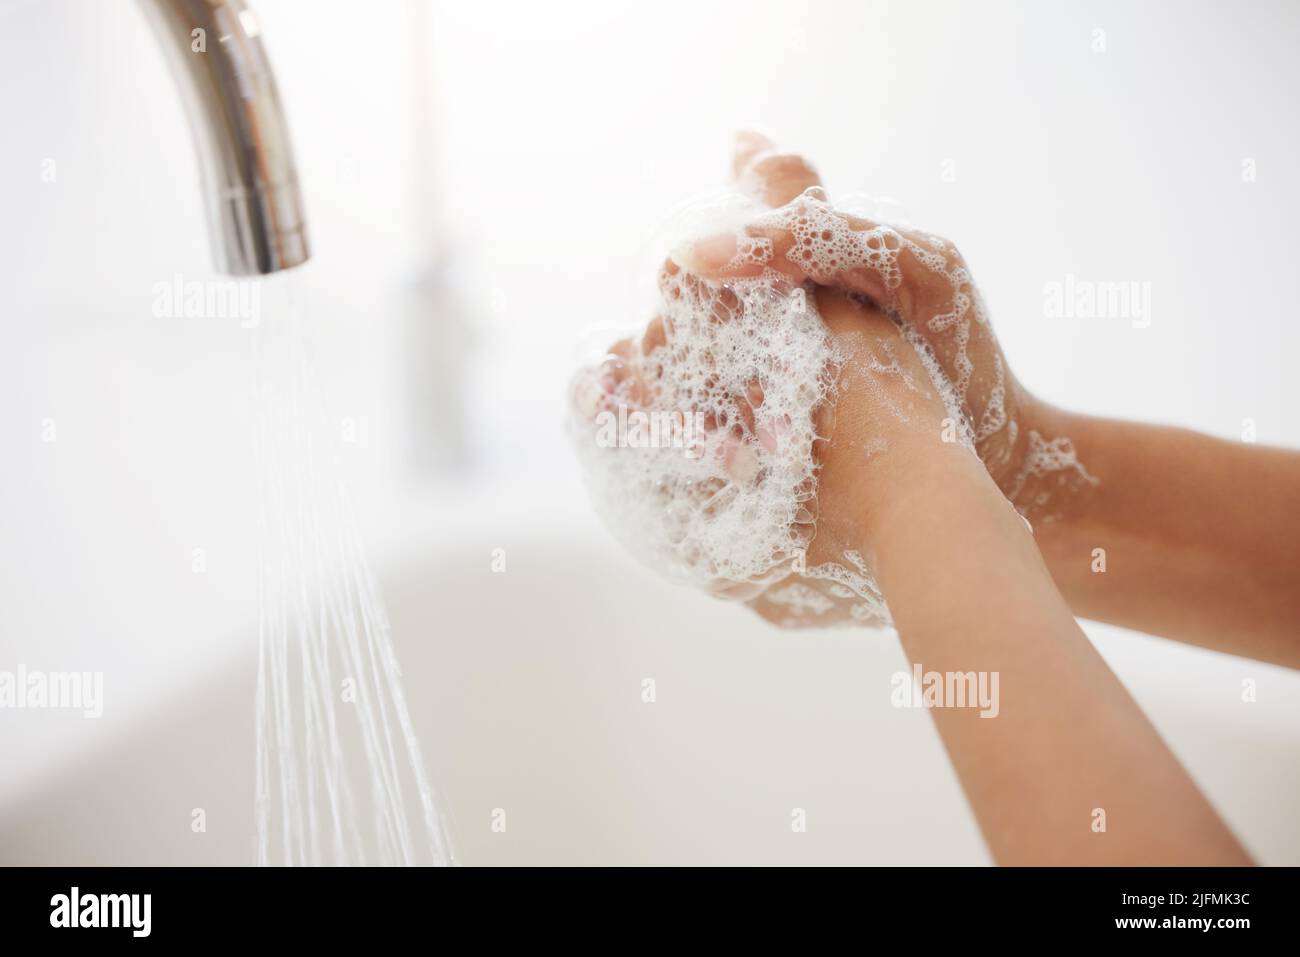 Una donna irriconoscibile lavando le mani al lavandino della cucina. Una donna sconosciuta di razza mista con le mani coperte di schiuma lavando le dita per sbarazzarsi di Foto Stock